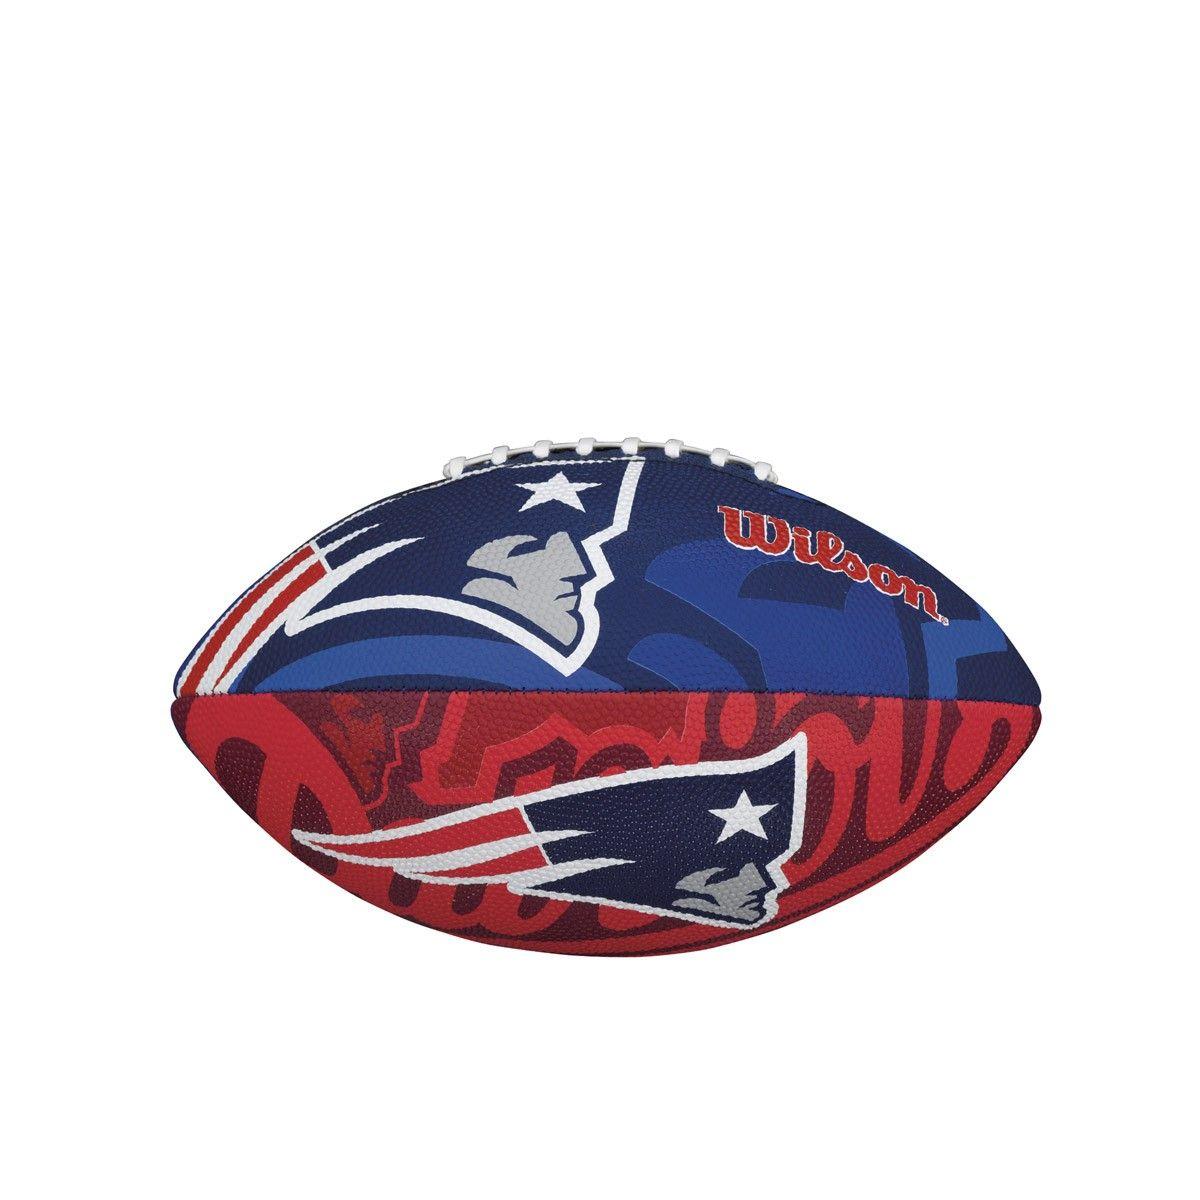 Patriots Football Logo - NFL TEAM LOGO JUNIOR SIZE FOOTBALL ENGLAND PATRIOTS. Wilson